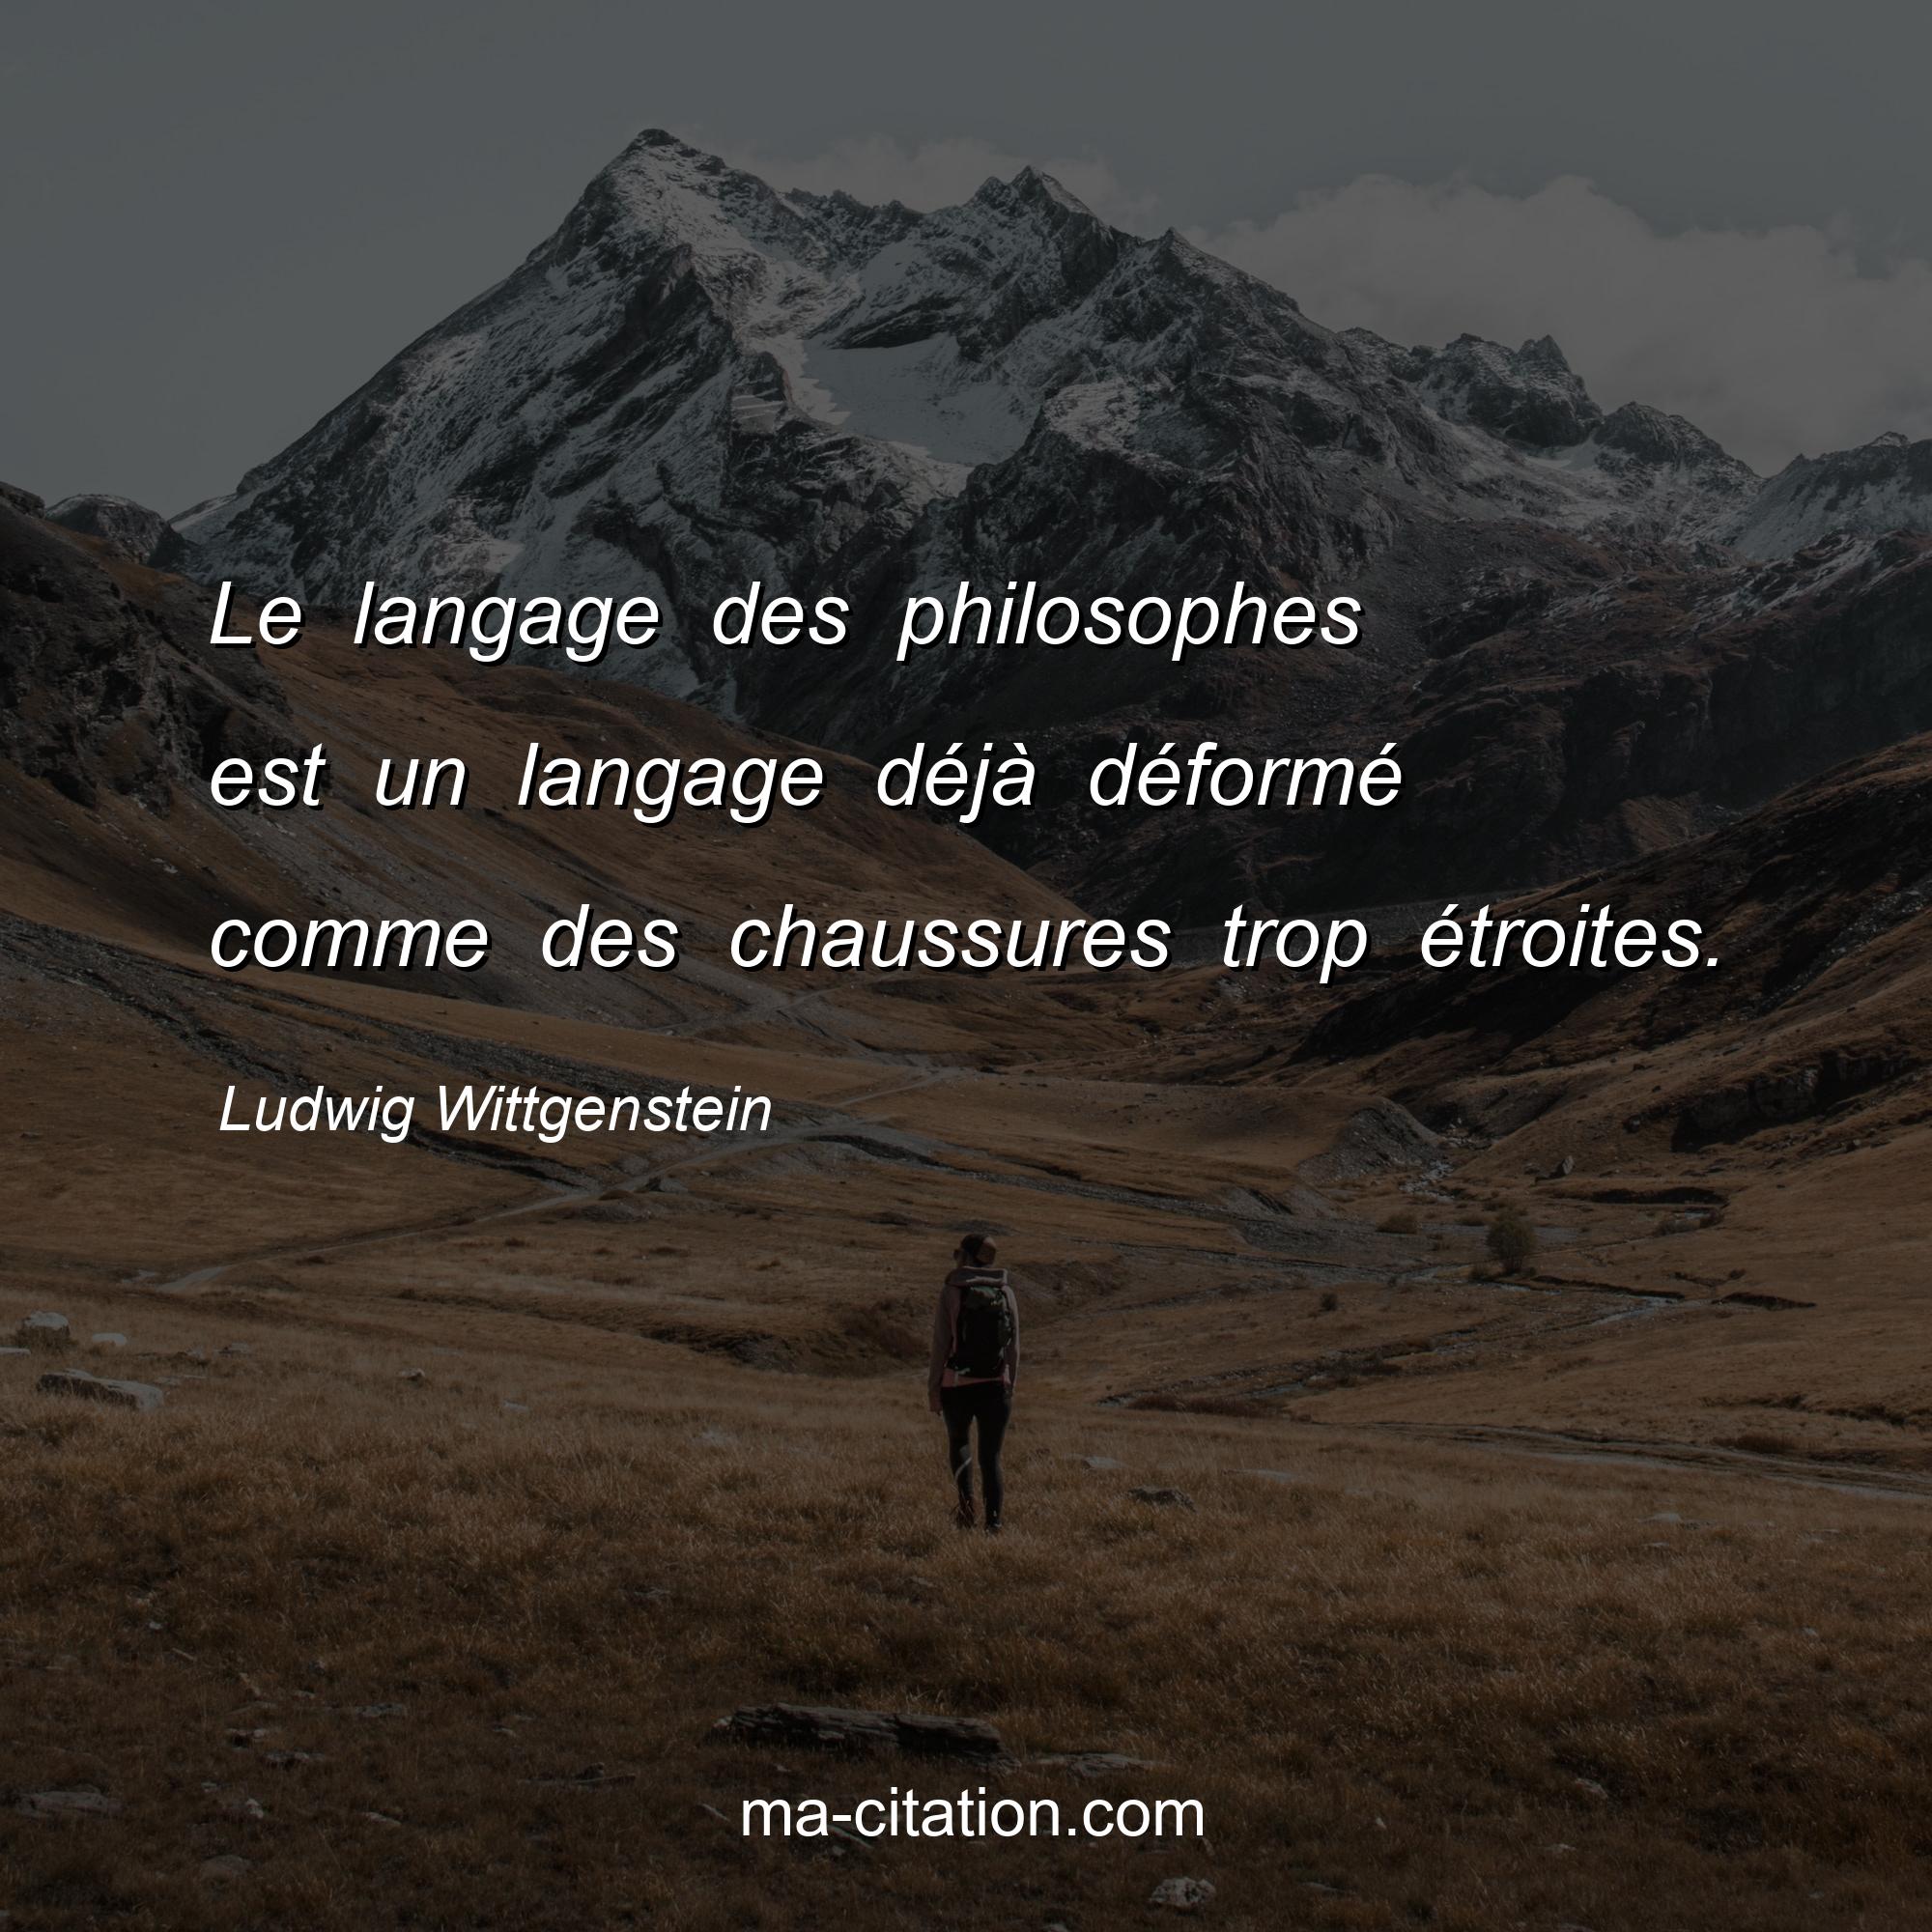 Ludwig Wittgenstein : Le langage des philosophes est un langage déjà déformé comme des chaussures trop étroites.